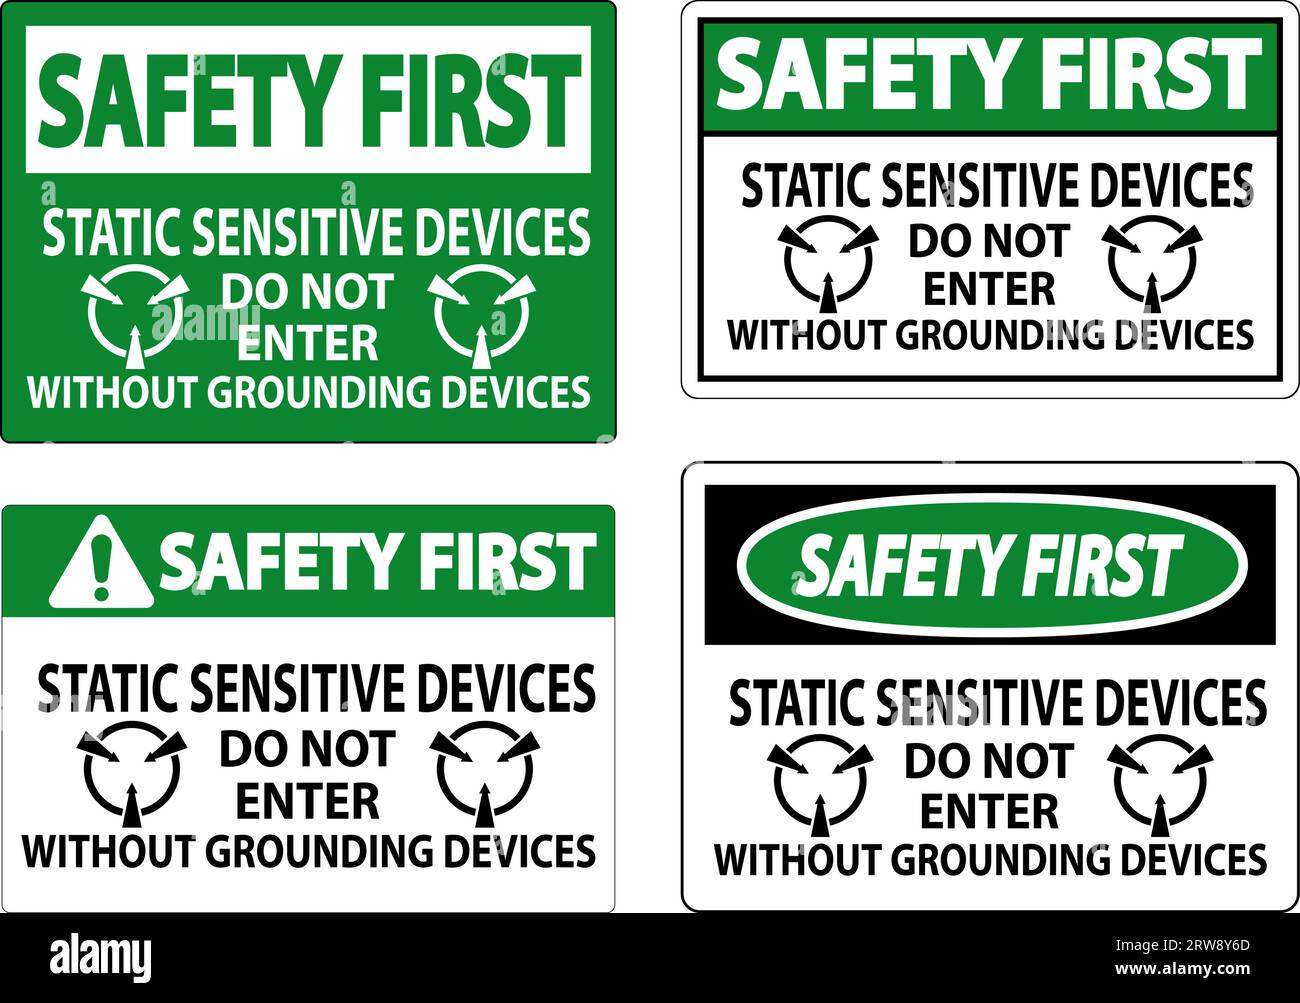 Première signalisation sécurité dispositifs sensibles à l'électricité statique ne pas entrer sans dispositifs de mise à la terre Illustration de Vecteur